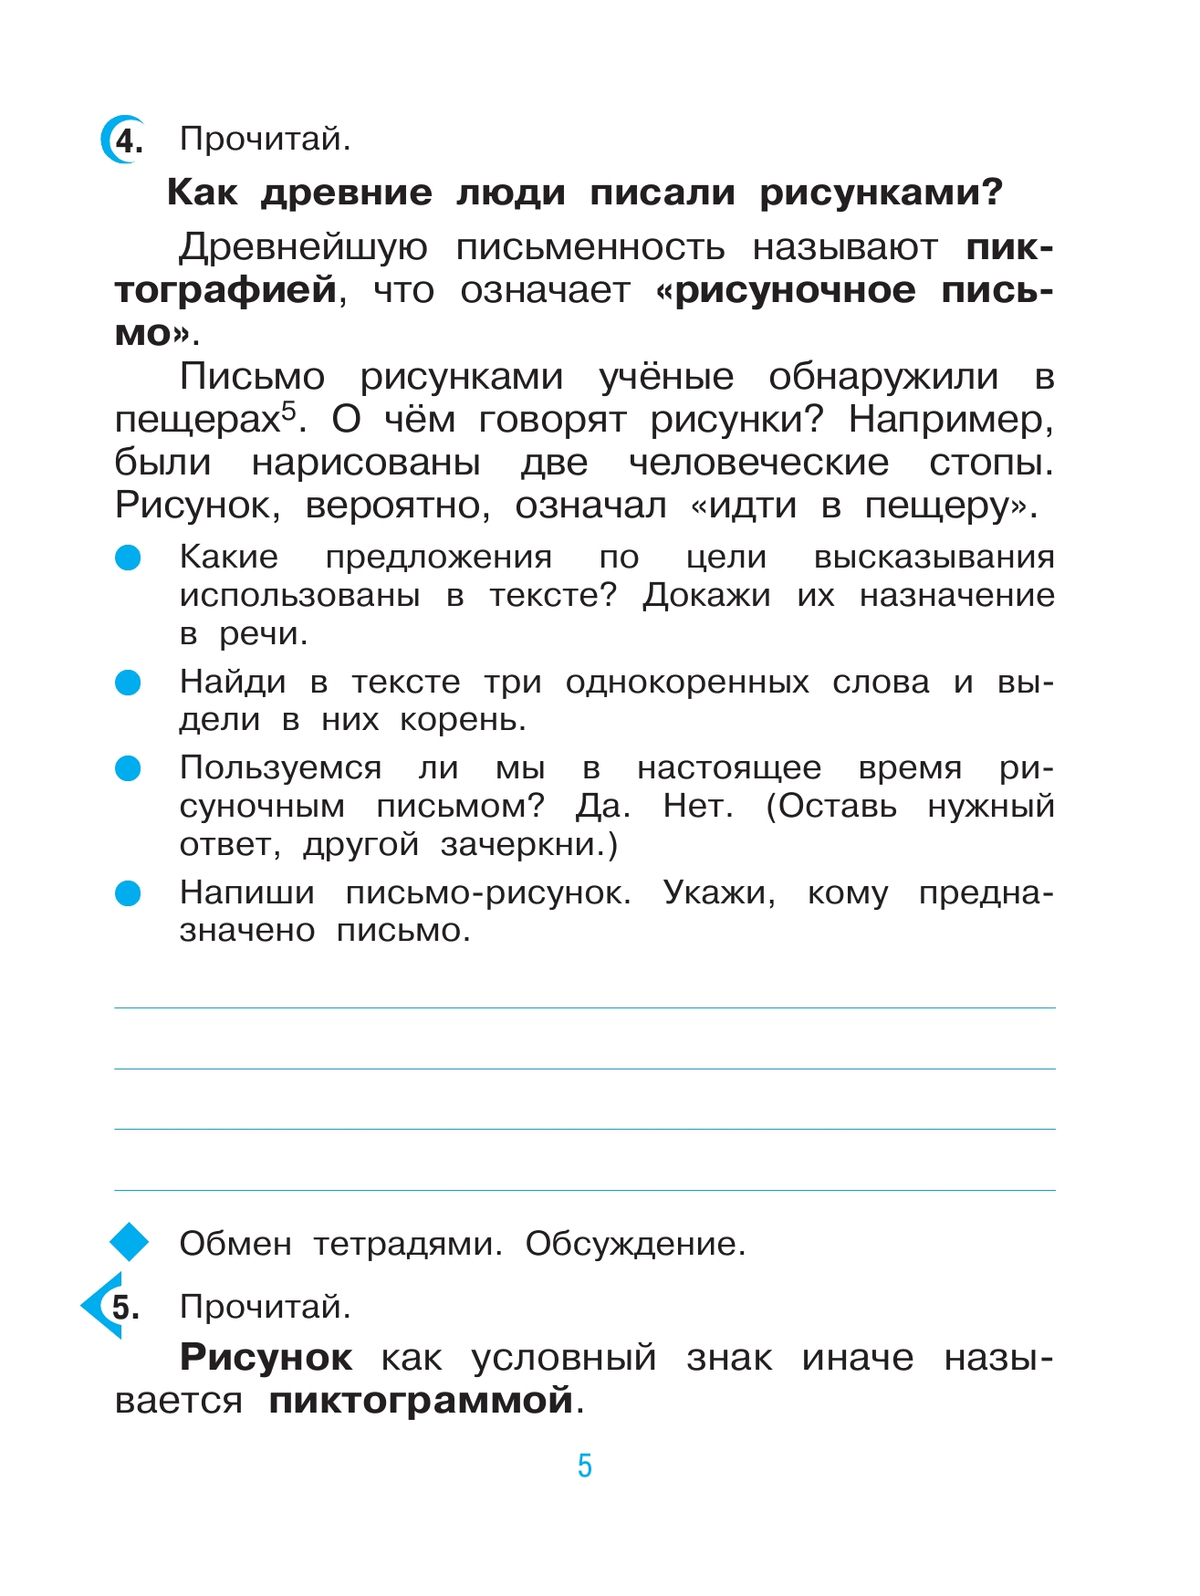 Русский язык. 3 класс. Рабочая тетрадь. В 2 ч. Часть 1 8